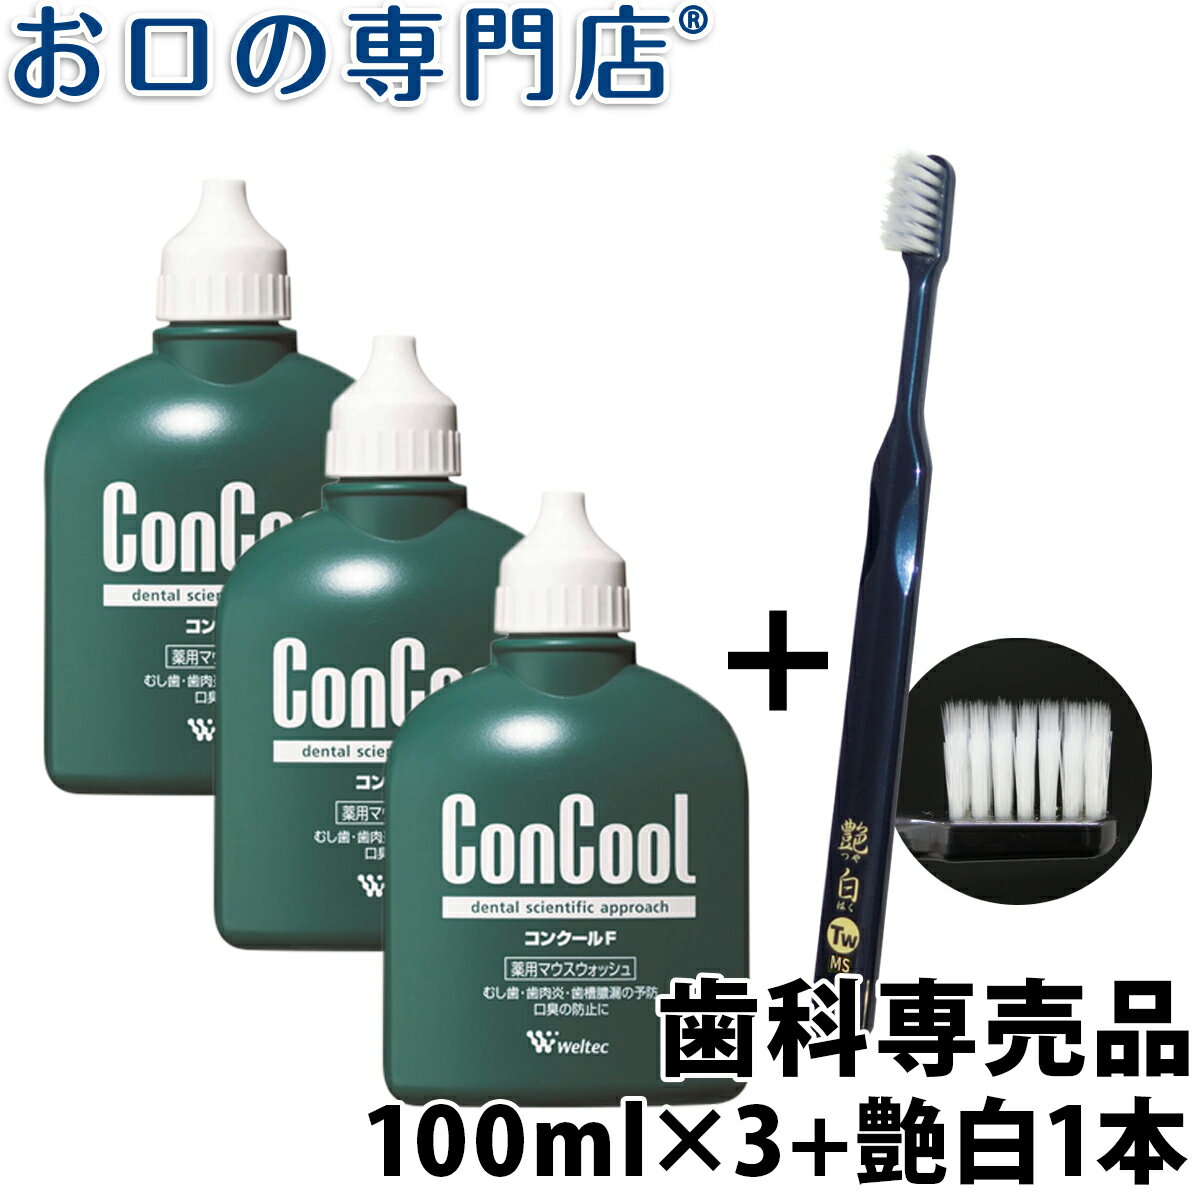 【送料無料】ウエルテック コンクールF 100ml × 3個 + 艶白歯ブラシ(日本製）1本付き